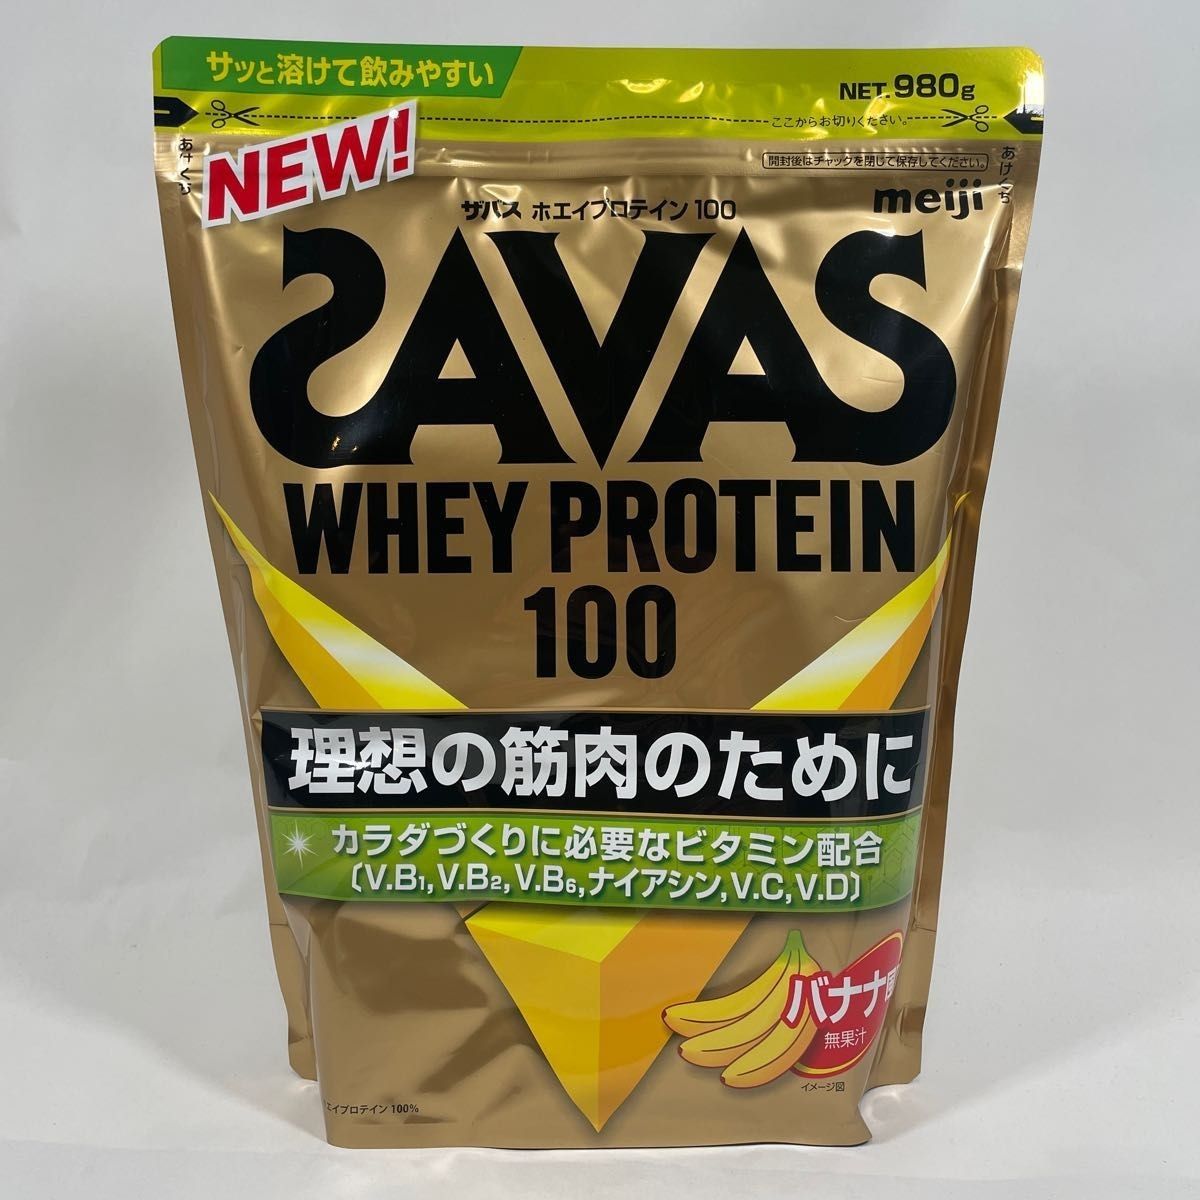 ザバス(SAVAS) ホエイプロテイン100 バナナ風味 980g